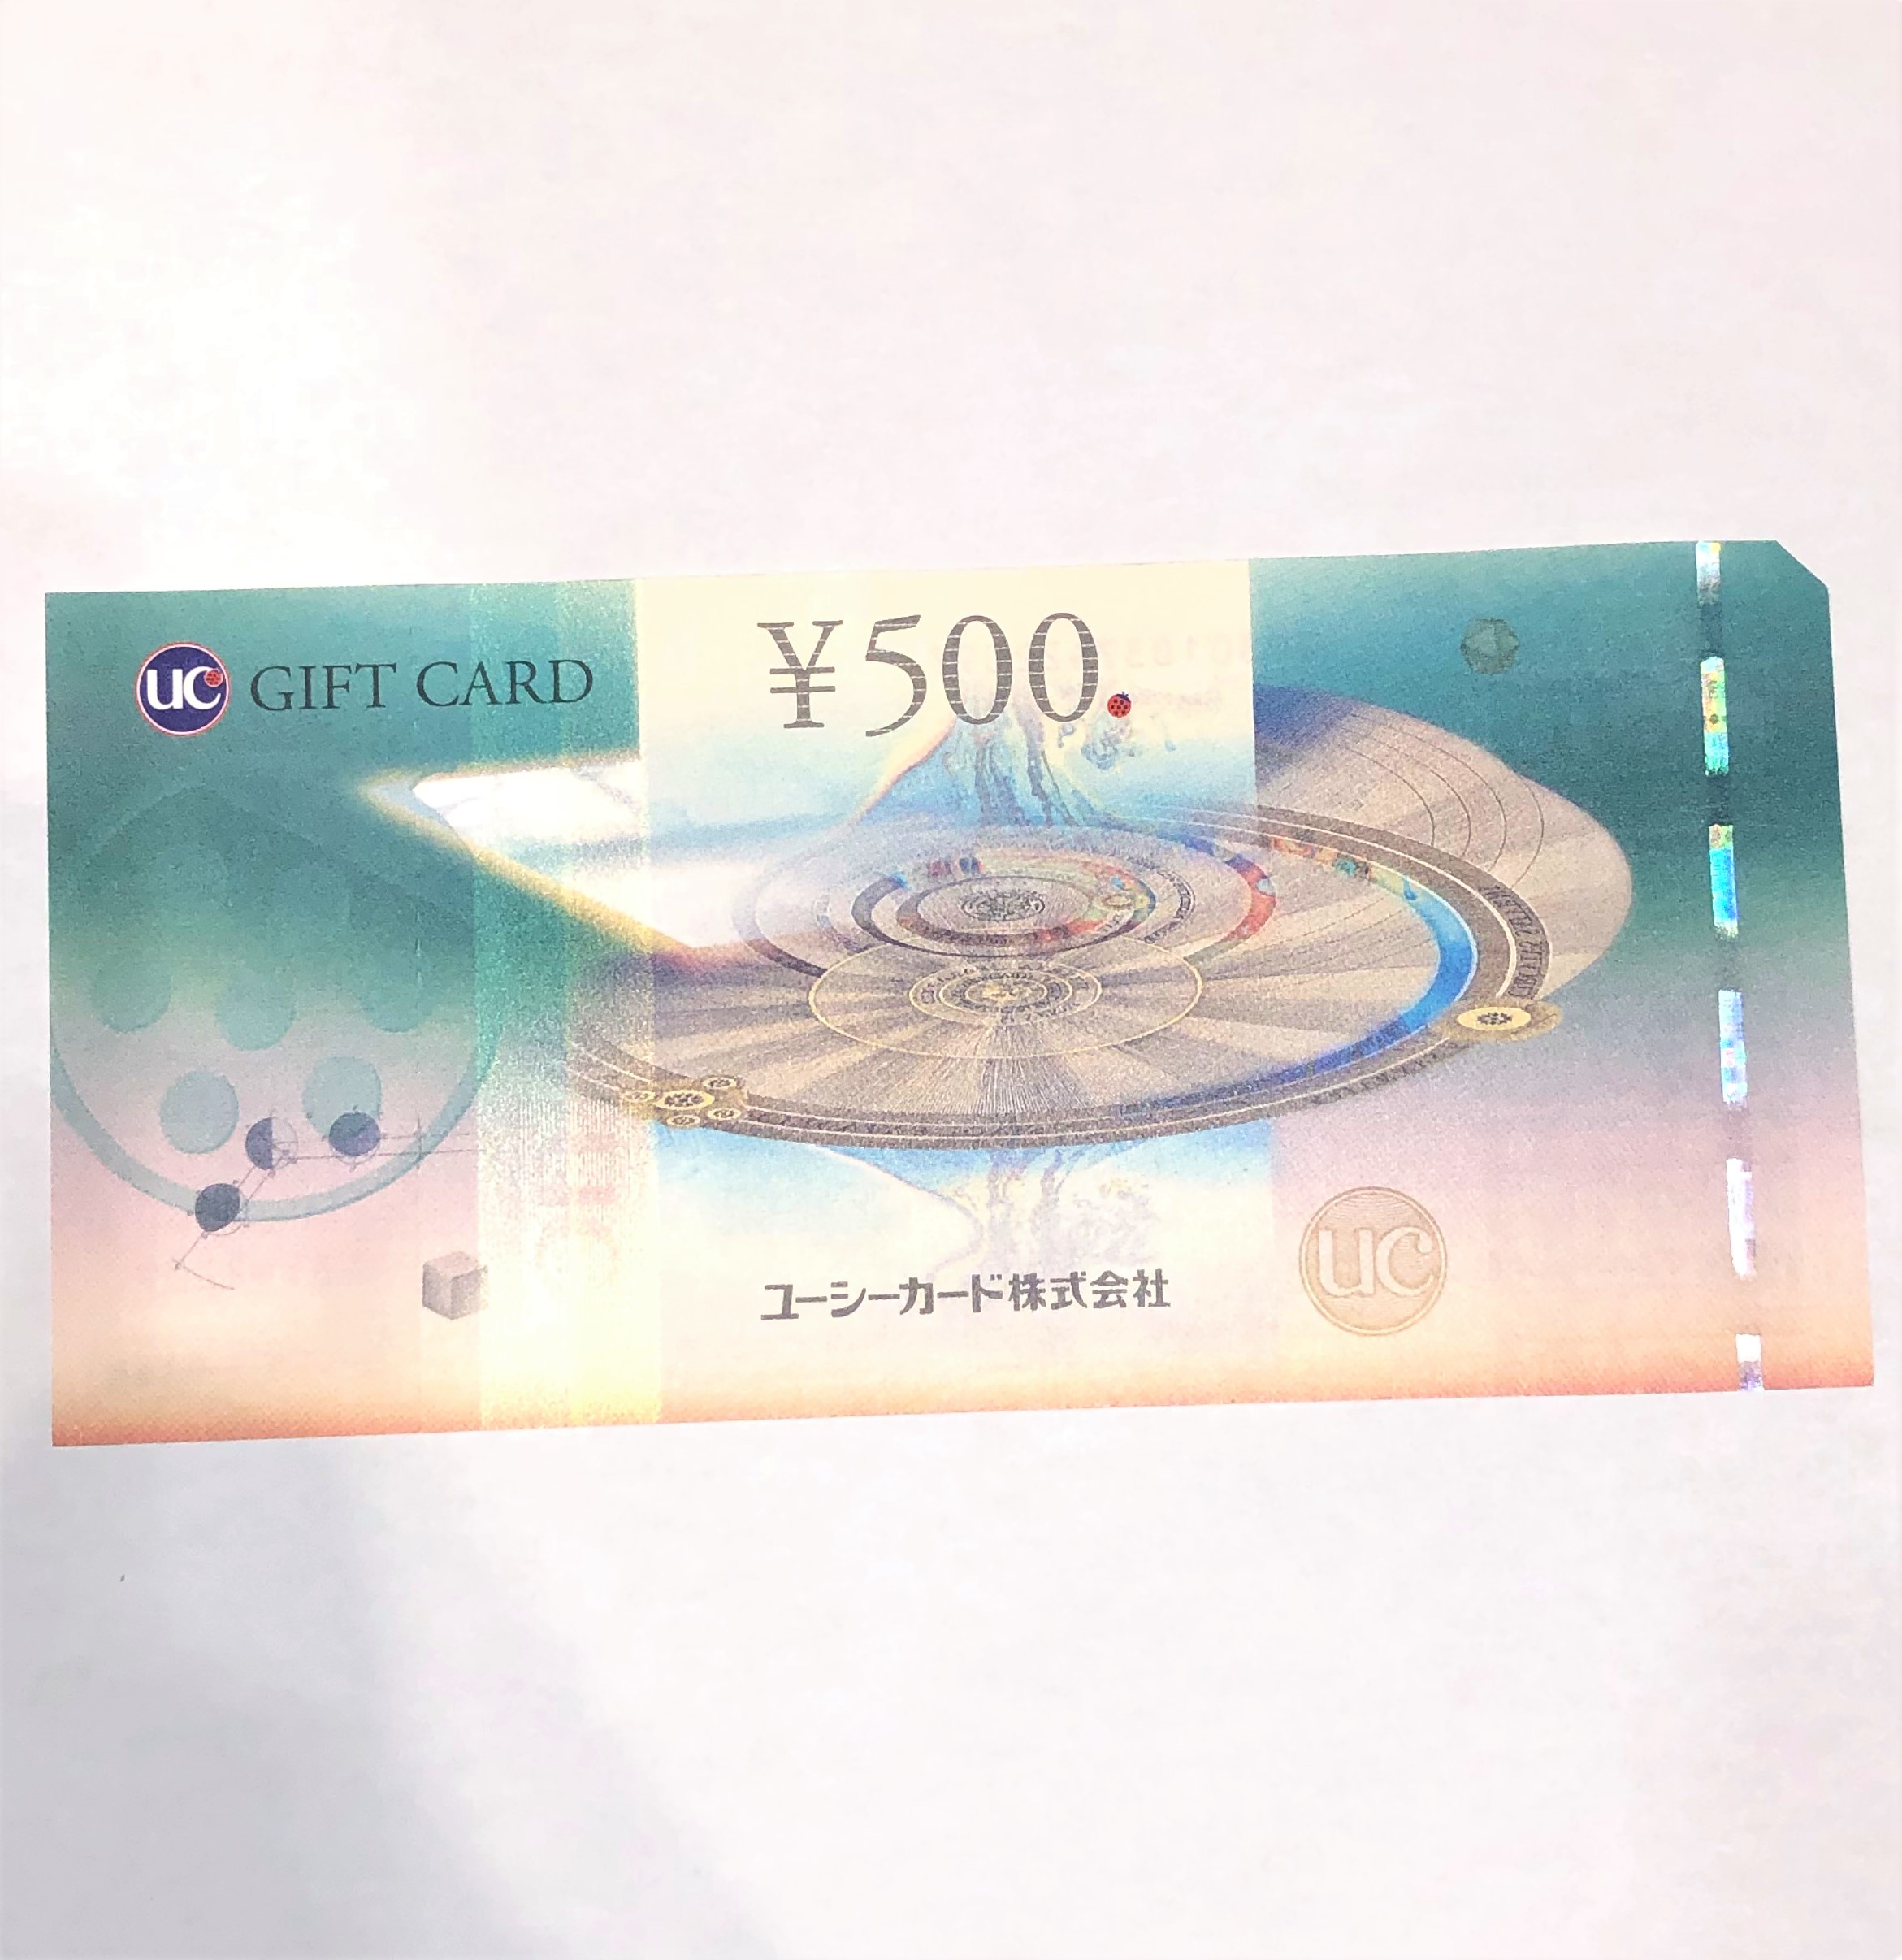 UCギフトカード 500円